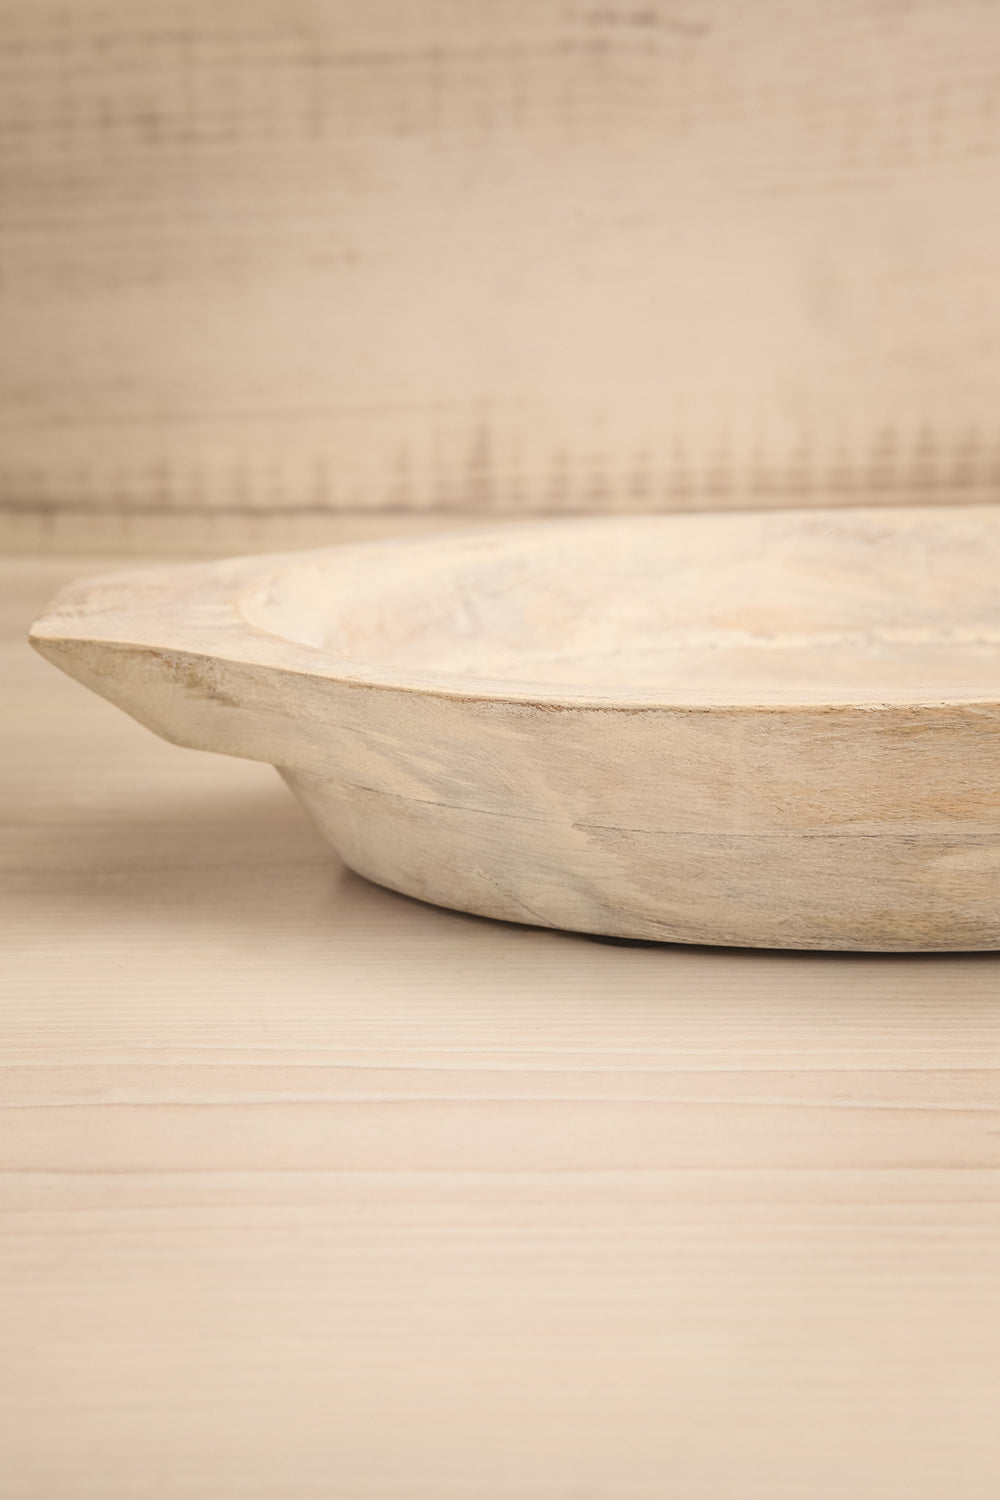 Legnano White Wooden Dough Bowl | Maison Garçonne details